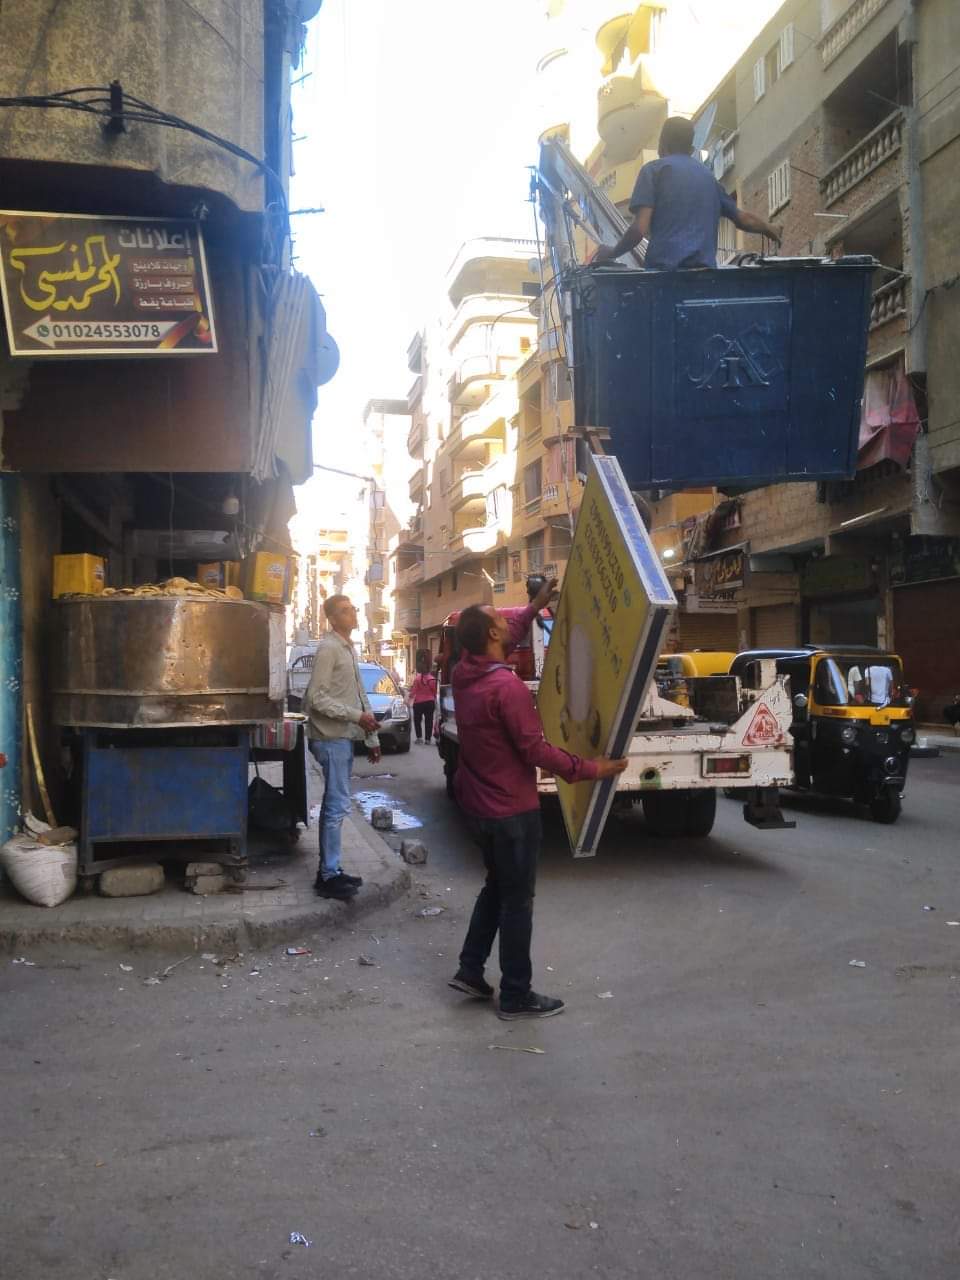 حملة إزالة للإعلانات المخالفة بحي المنتزة بالإسكندرية